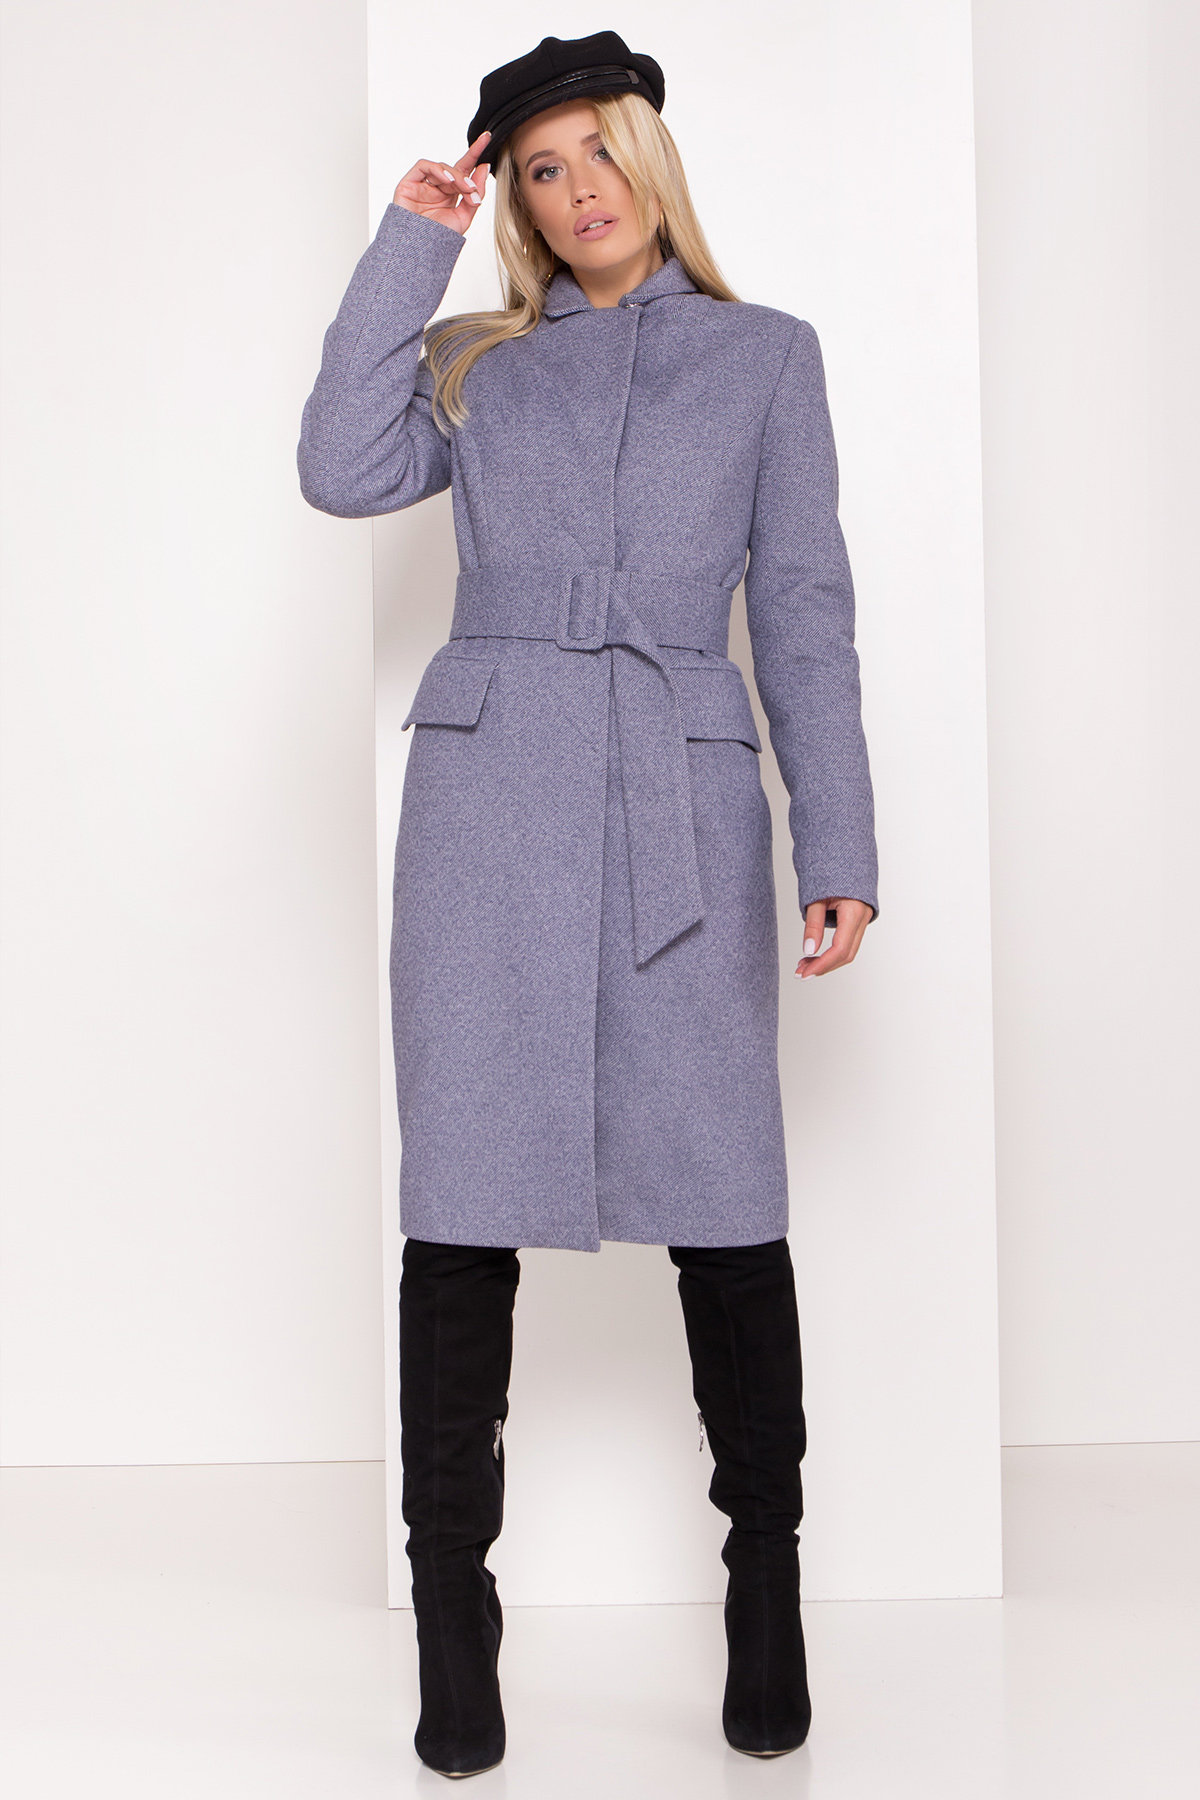 Стильное зимнее женское пальто от Modus Полуприталенное зимнее пальто с отложным воротником Лабио 8182